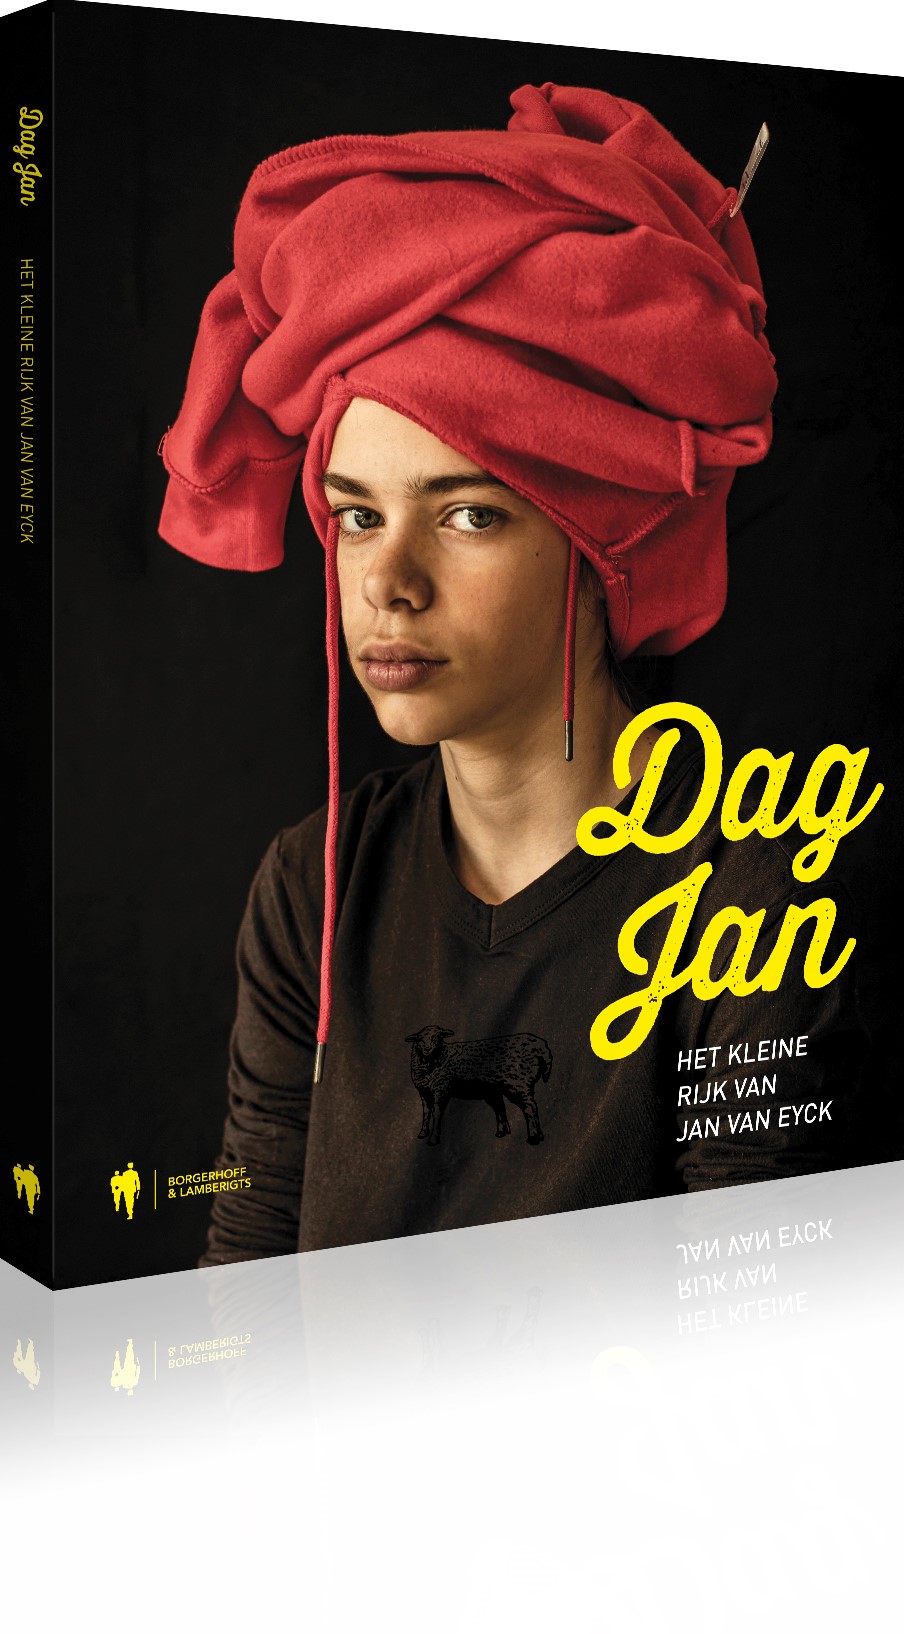 Cover of the book Dag Jan, Het Kleine rijk by Jan van Eyck